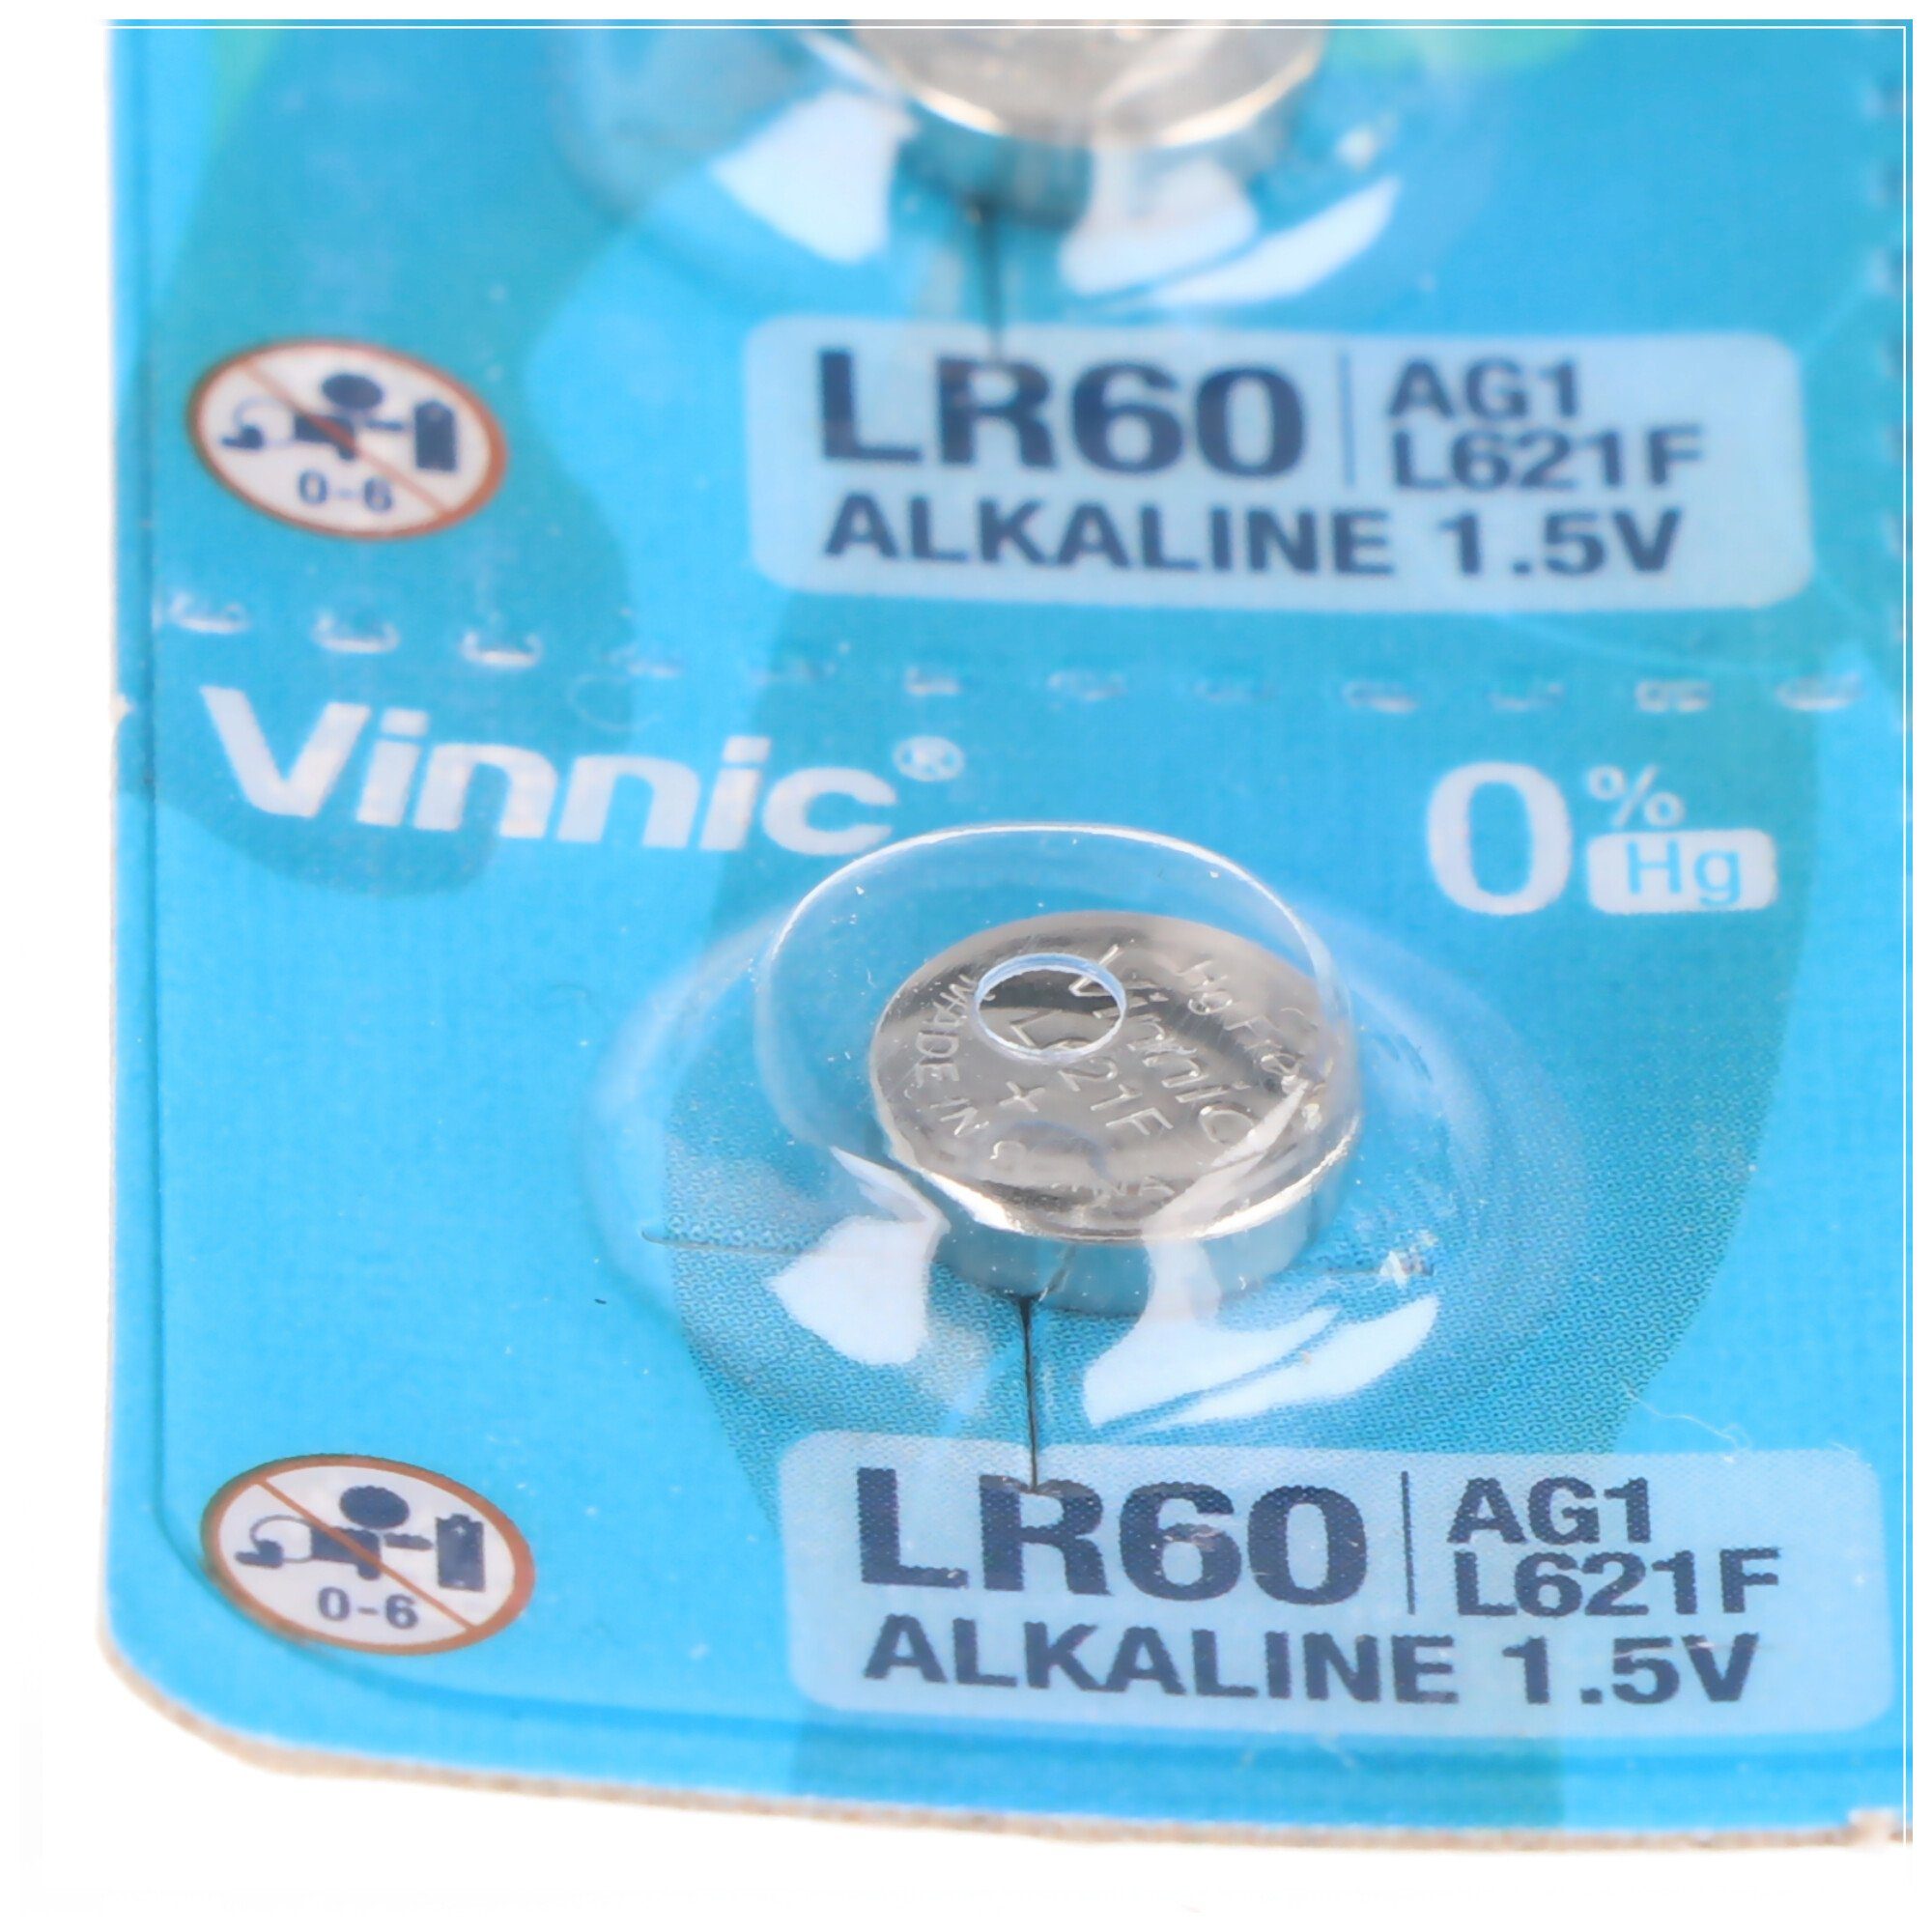 Knopfzelle G1, Alkaline-Einweg-Batterie Type AG1, LR60, L621, Stück VINNIC 10 AG1 6,8x6